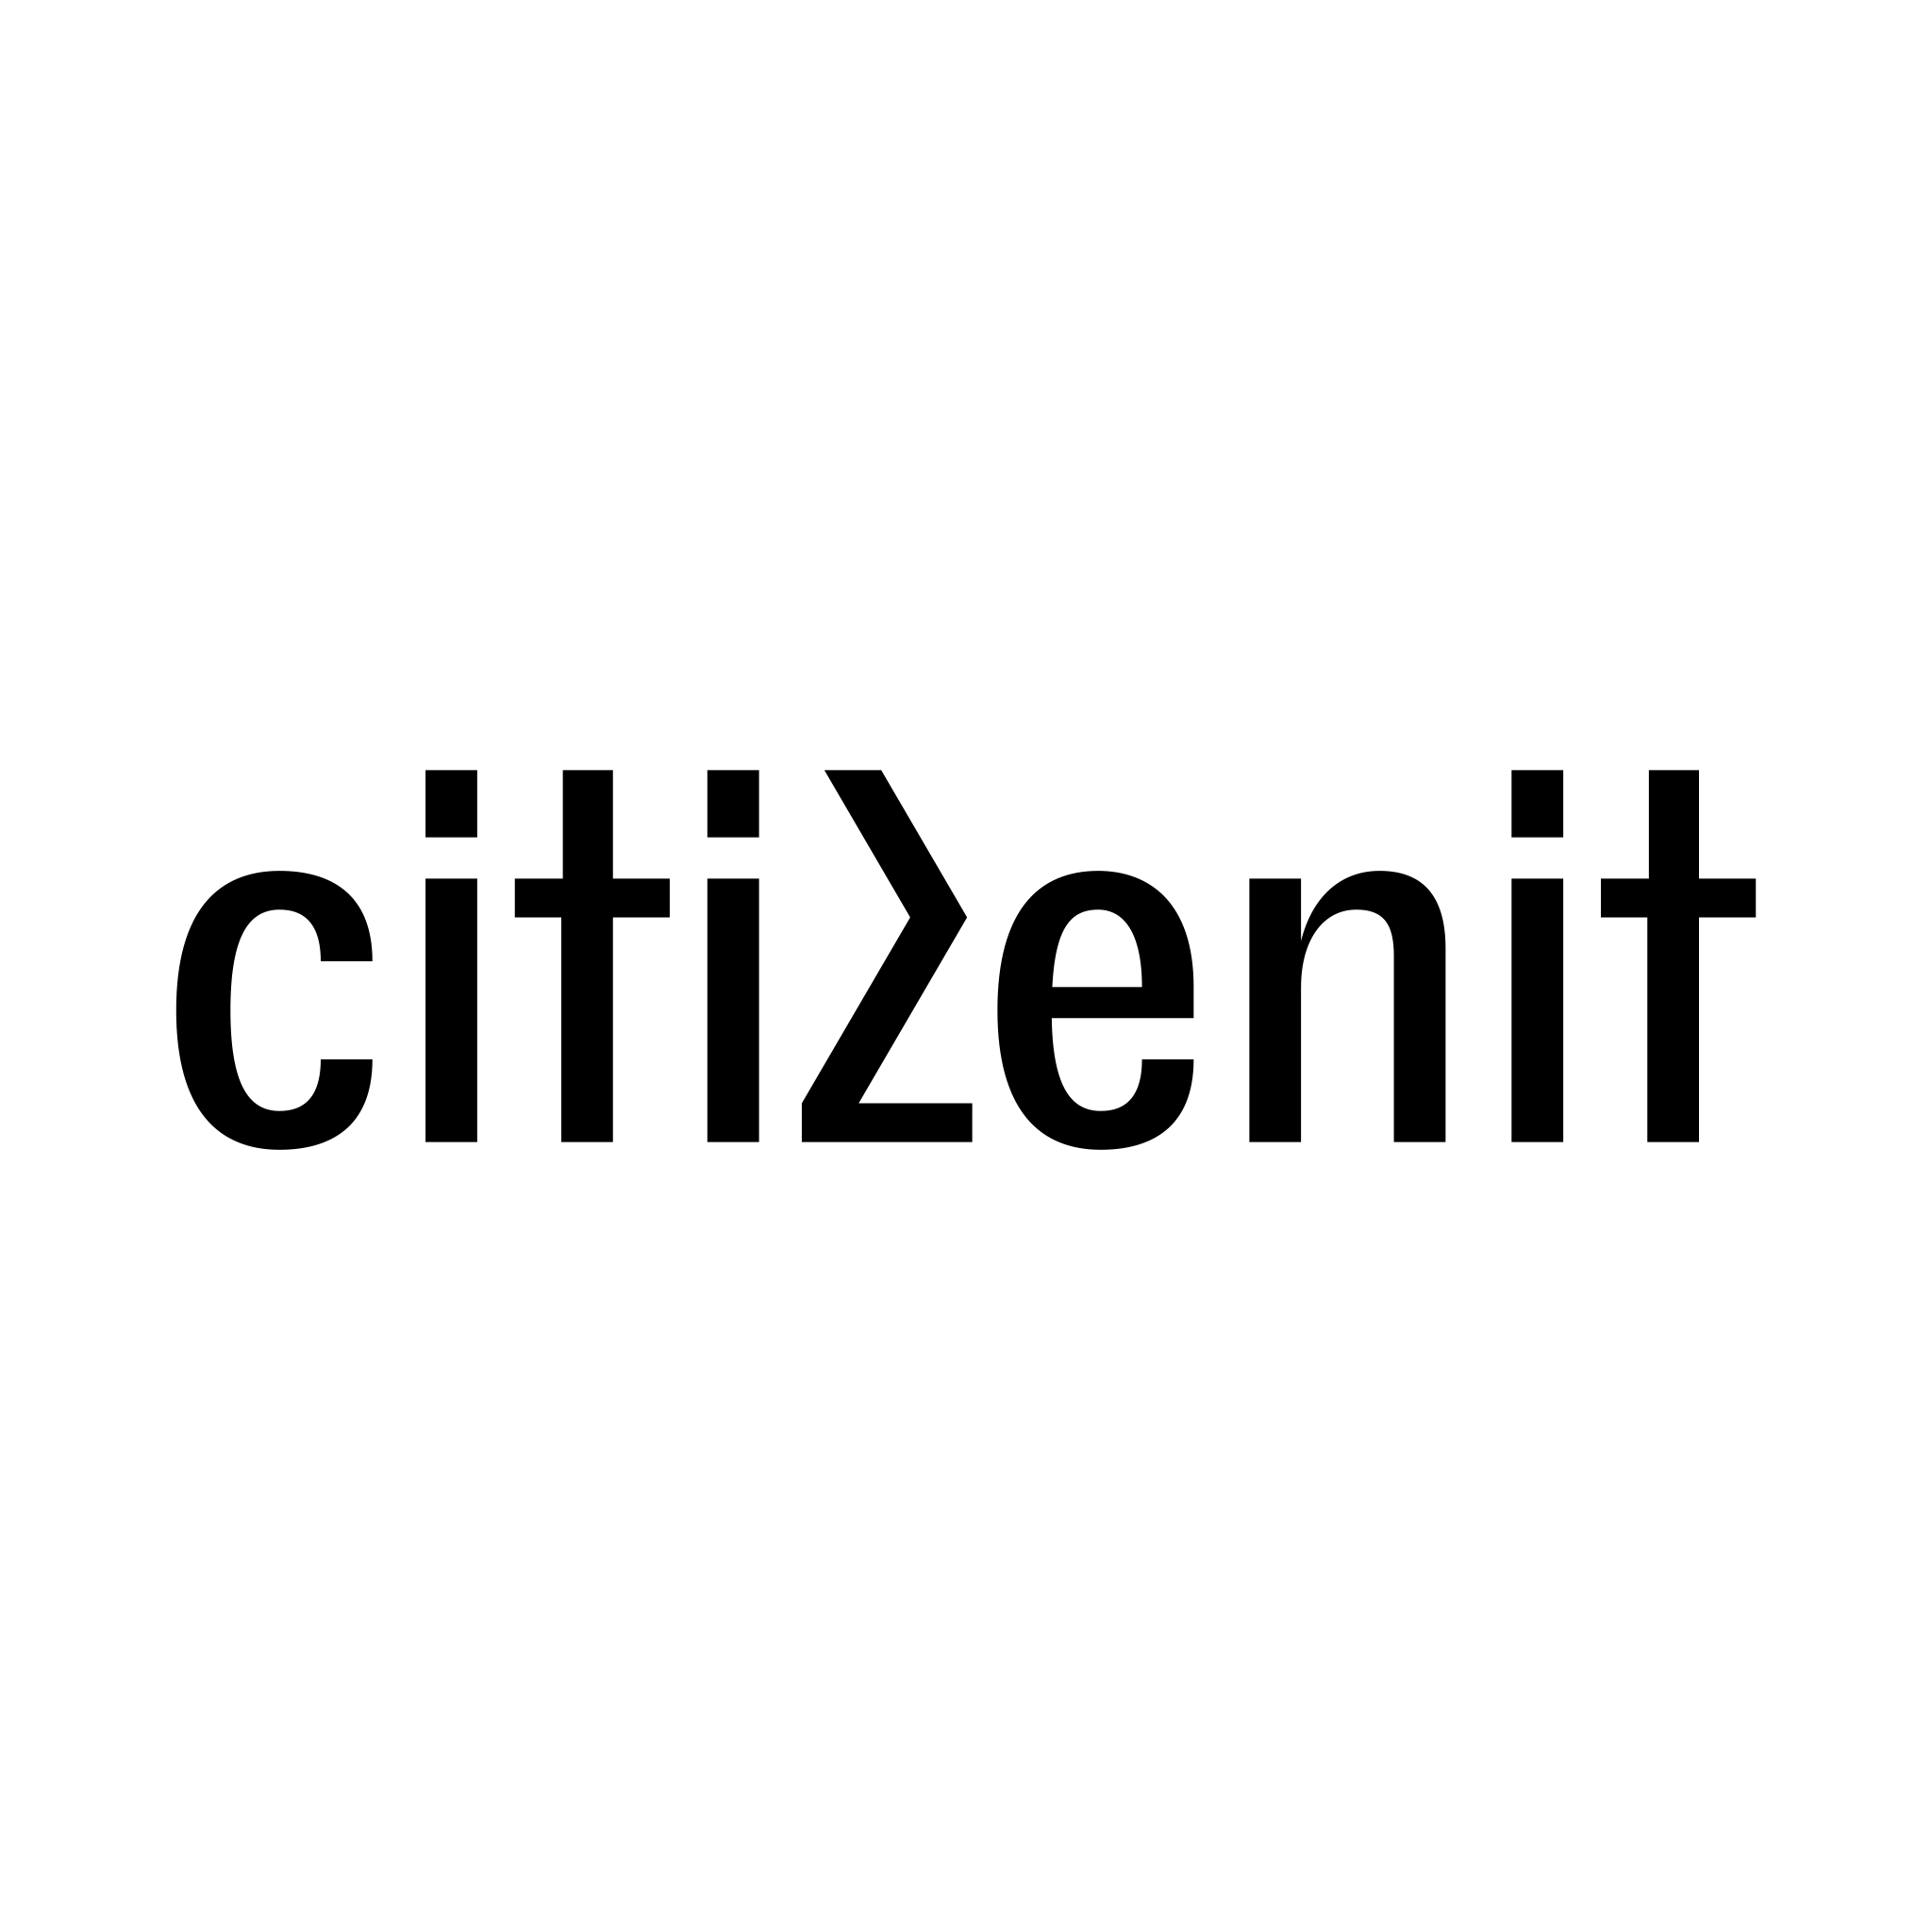 citizenit logo